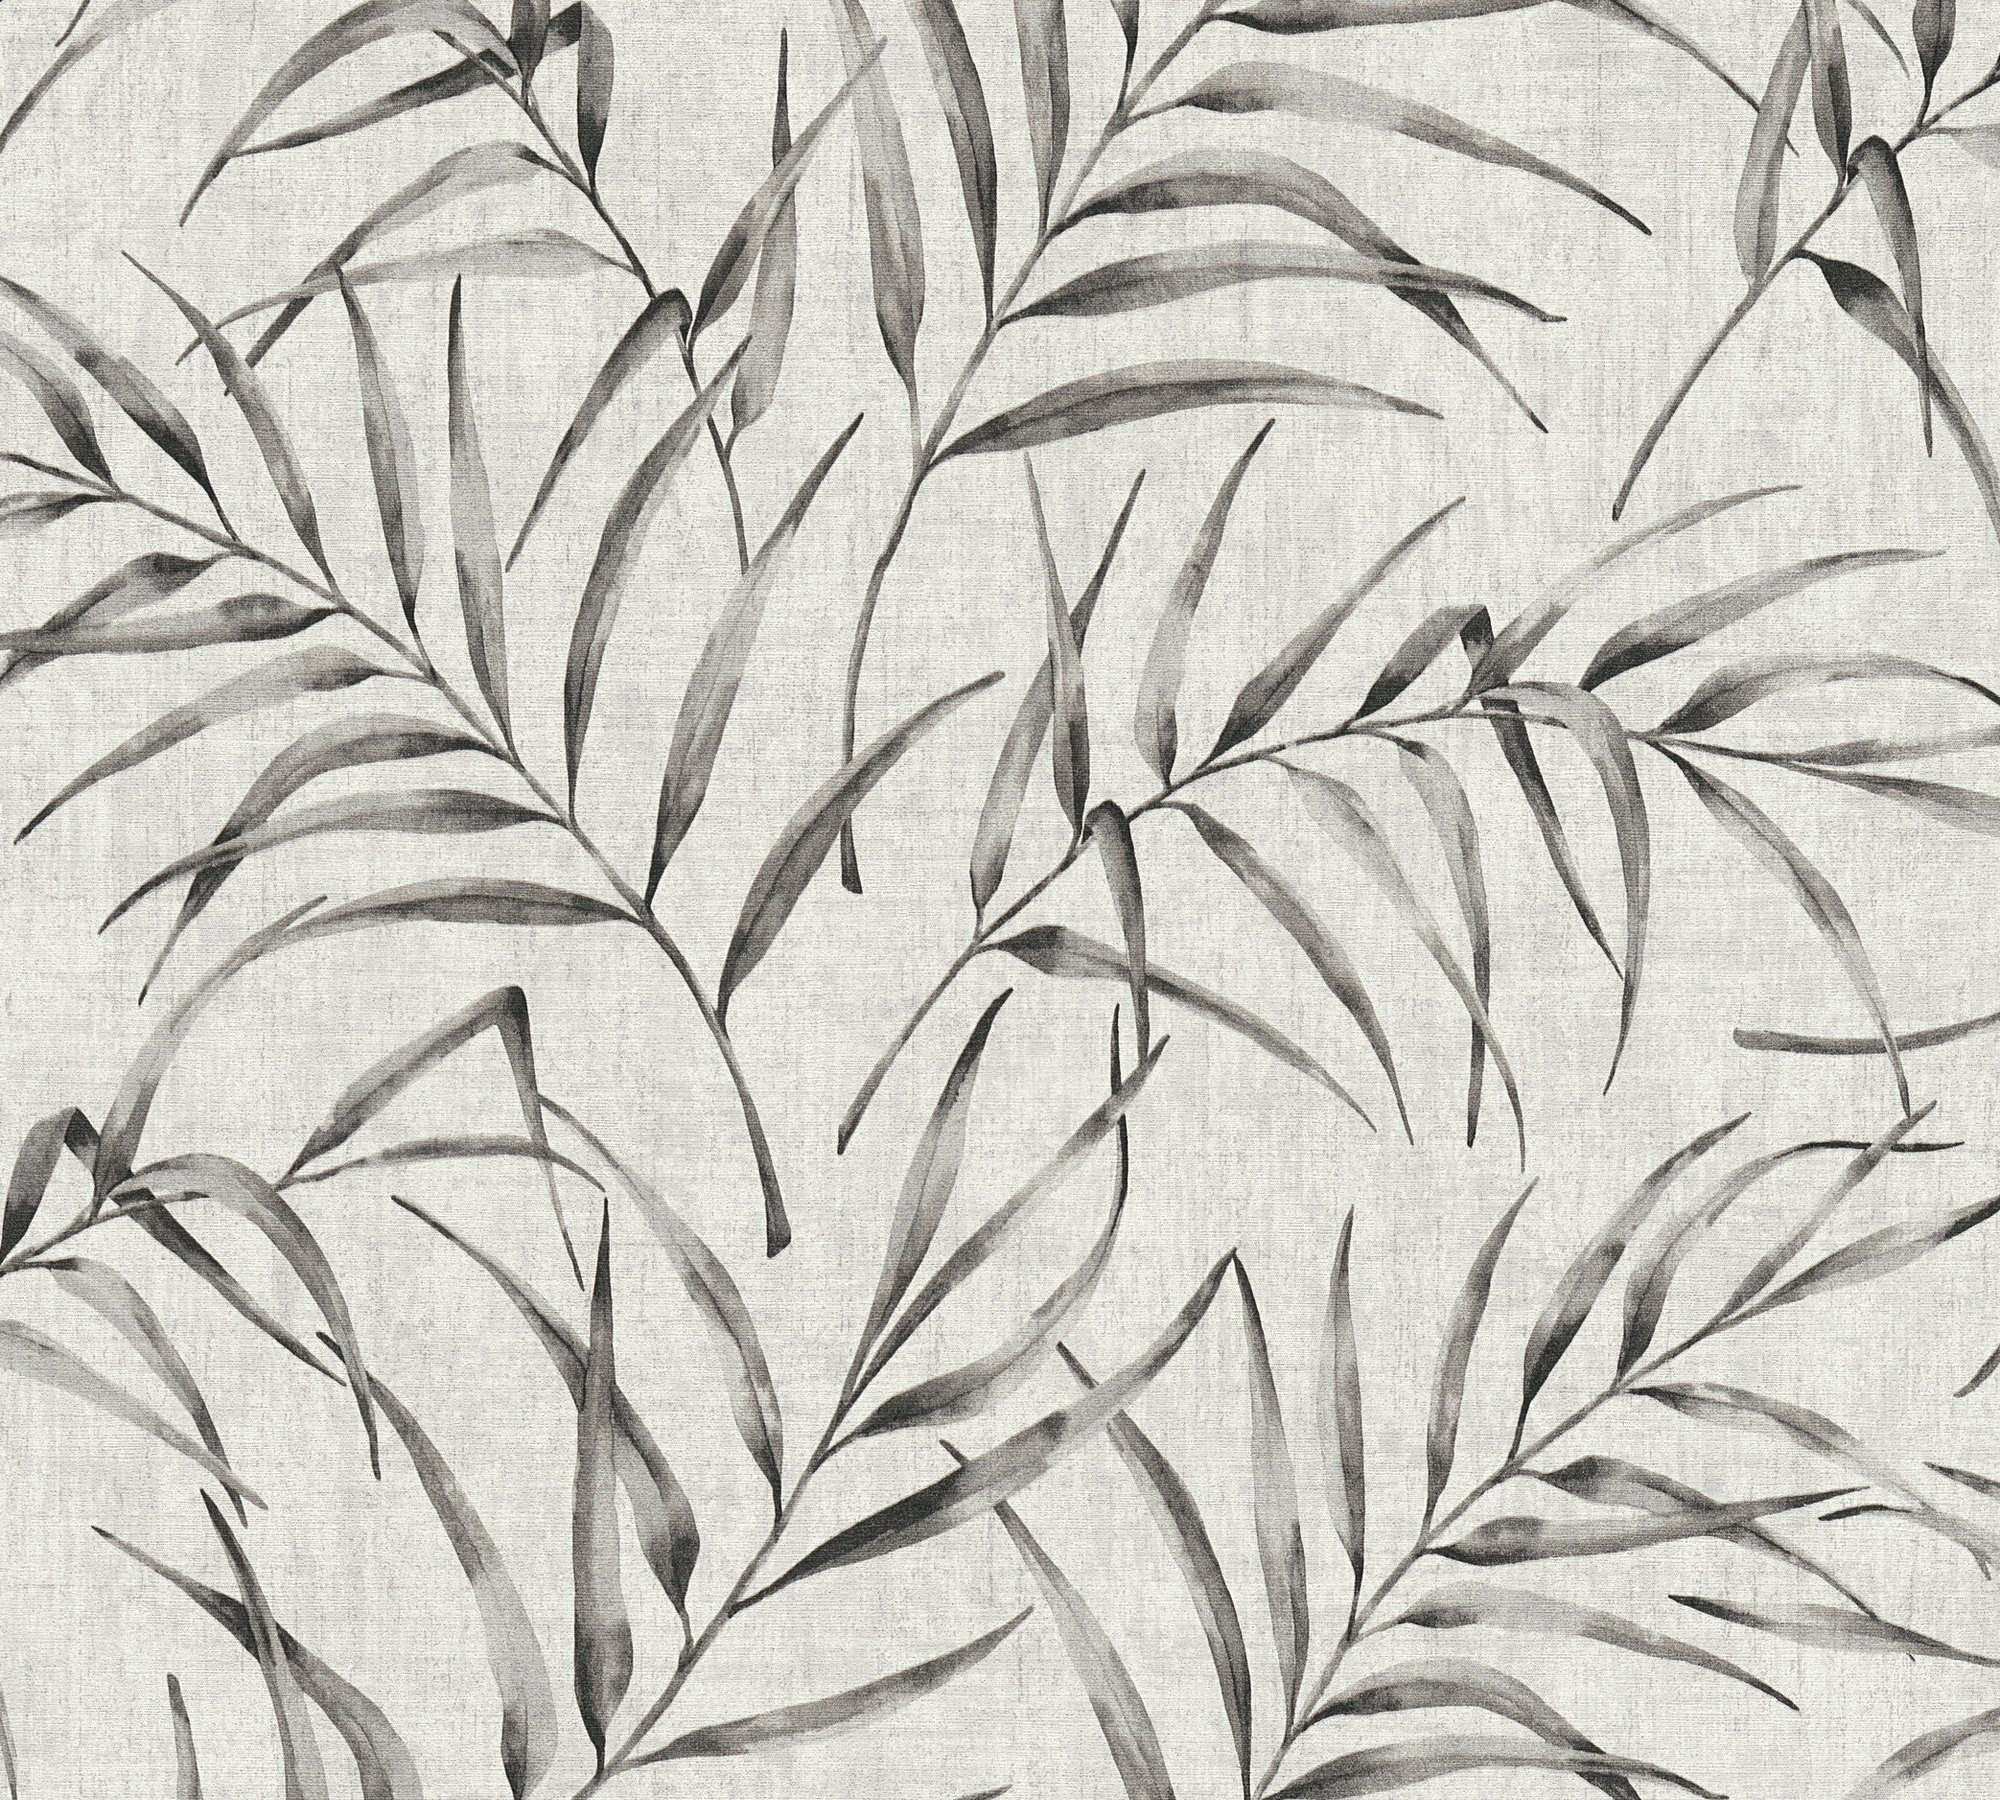 Tapete A.S. Dschungel in Création Dschungeltapete Greenery Palmen mit grau/beige Vliestapete Optik, Palmenprint floral,